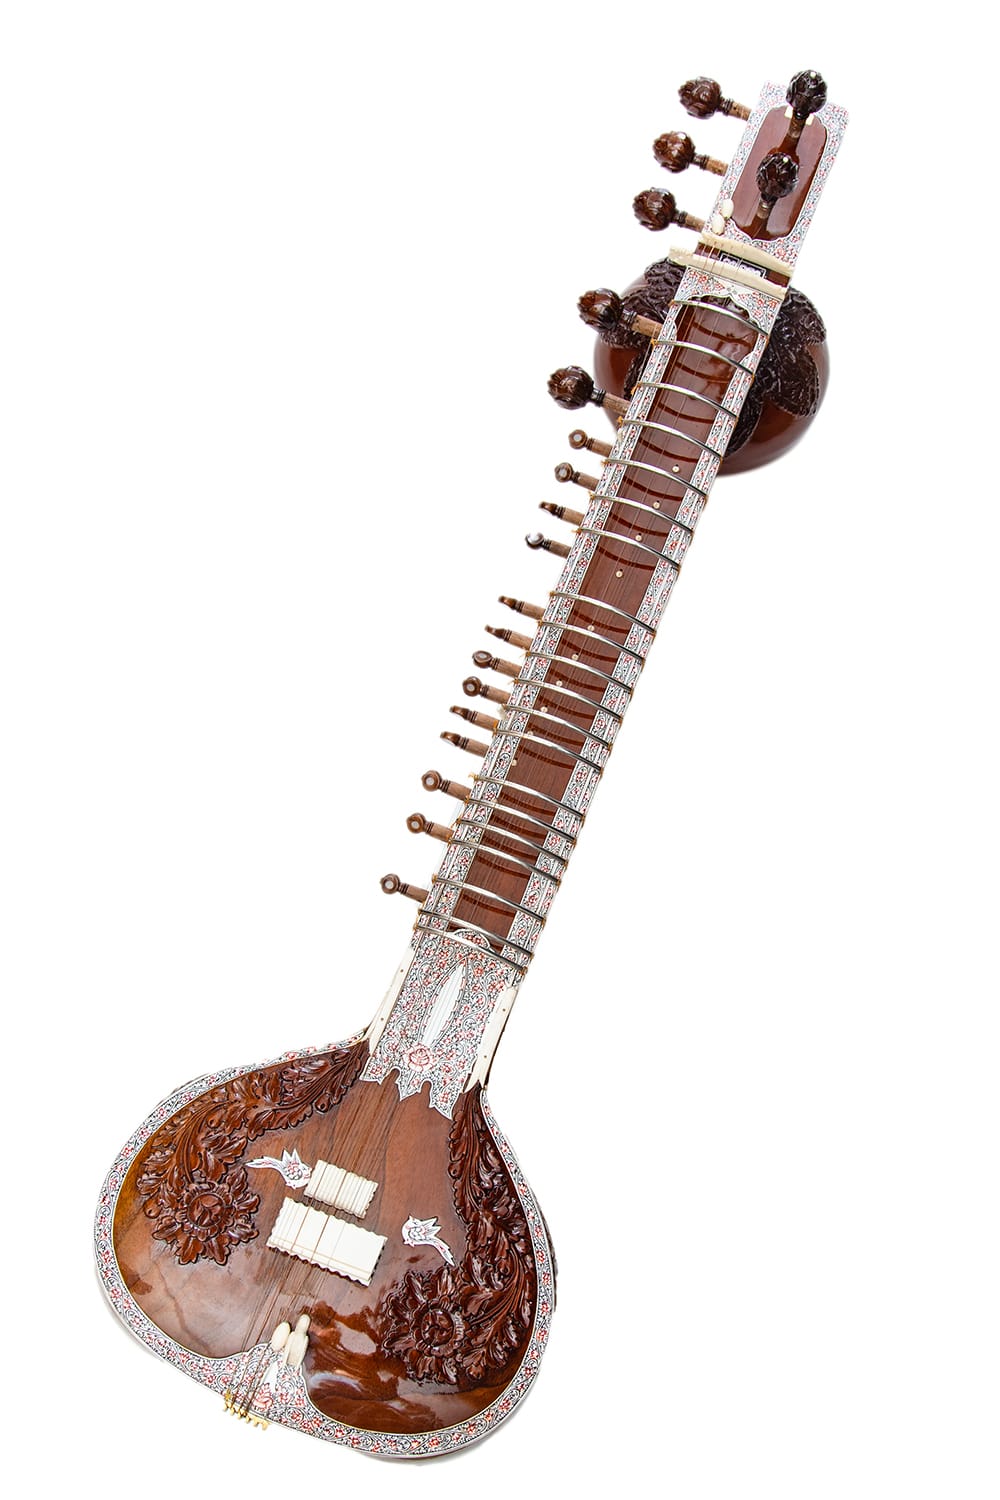 新しい季節 シタール パーツ 部品 ミズラーブ Mizrab シタール用のピック 民族楽器 インド楽器 エスニック楽器 